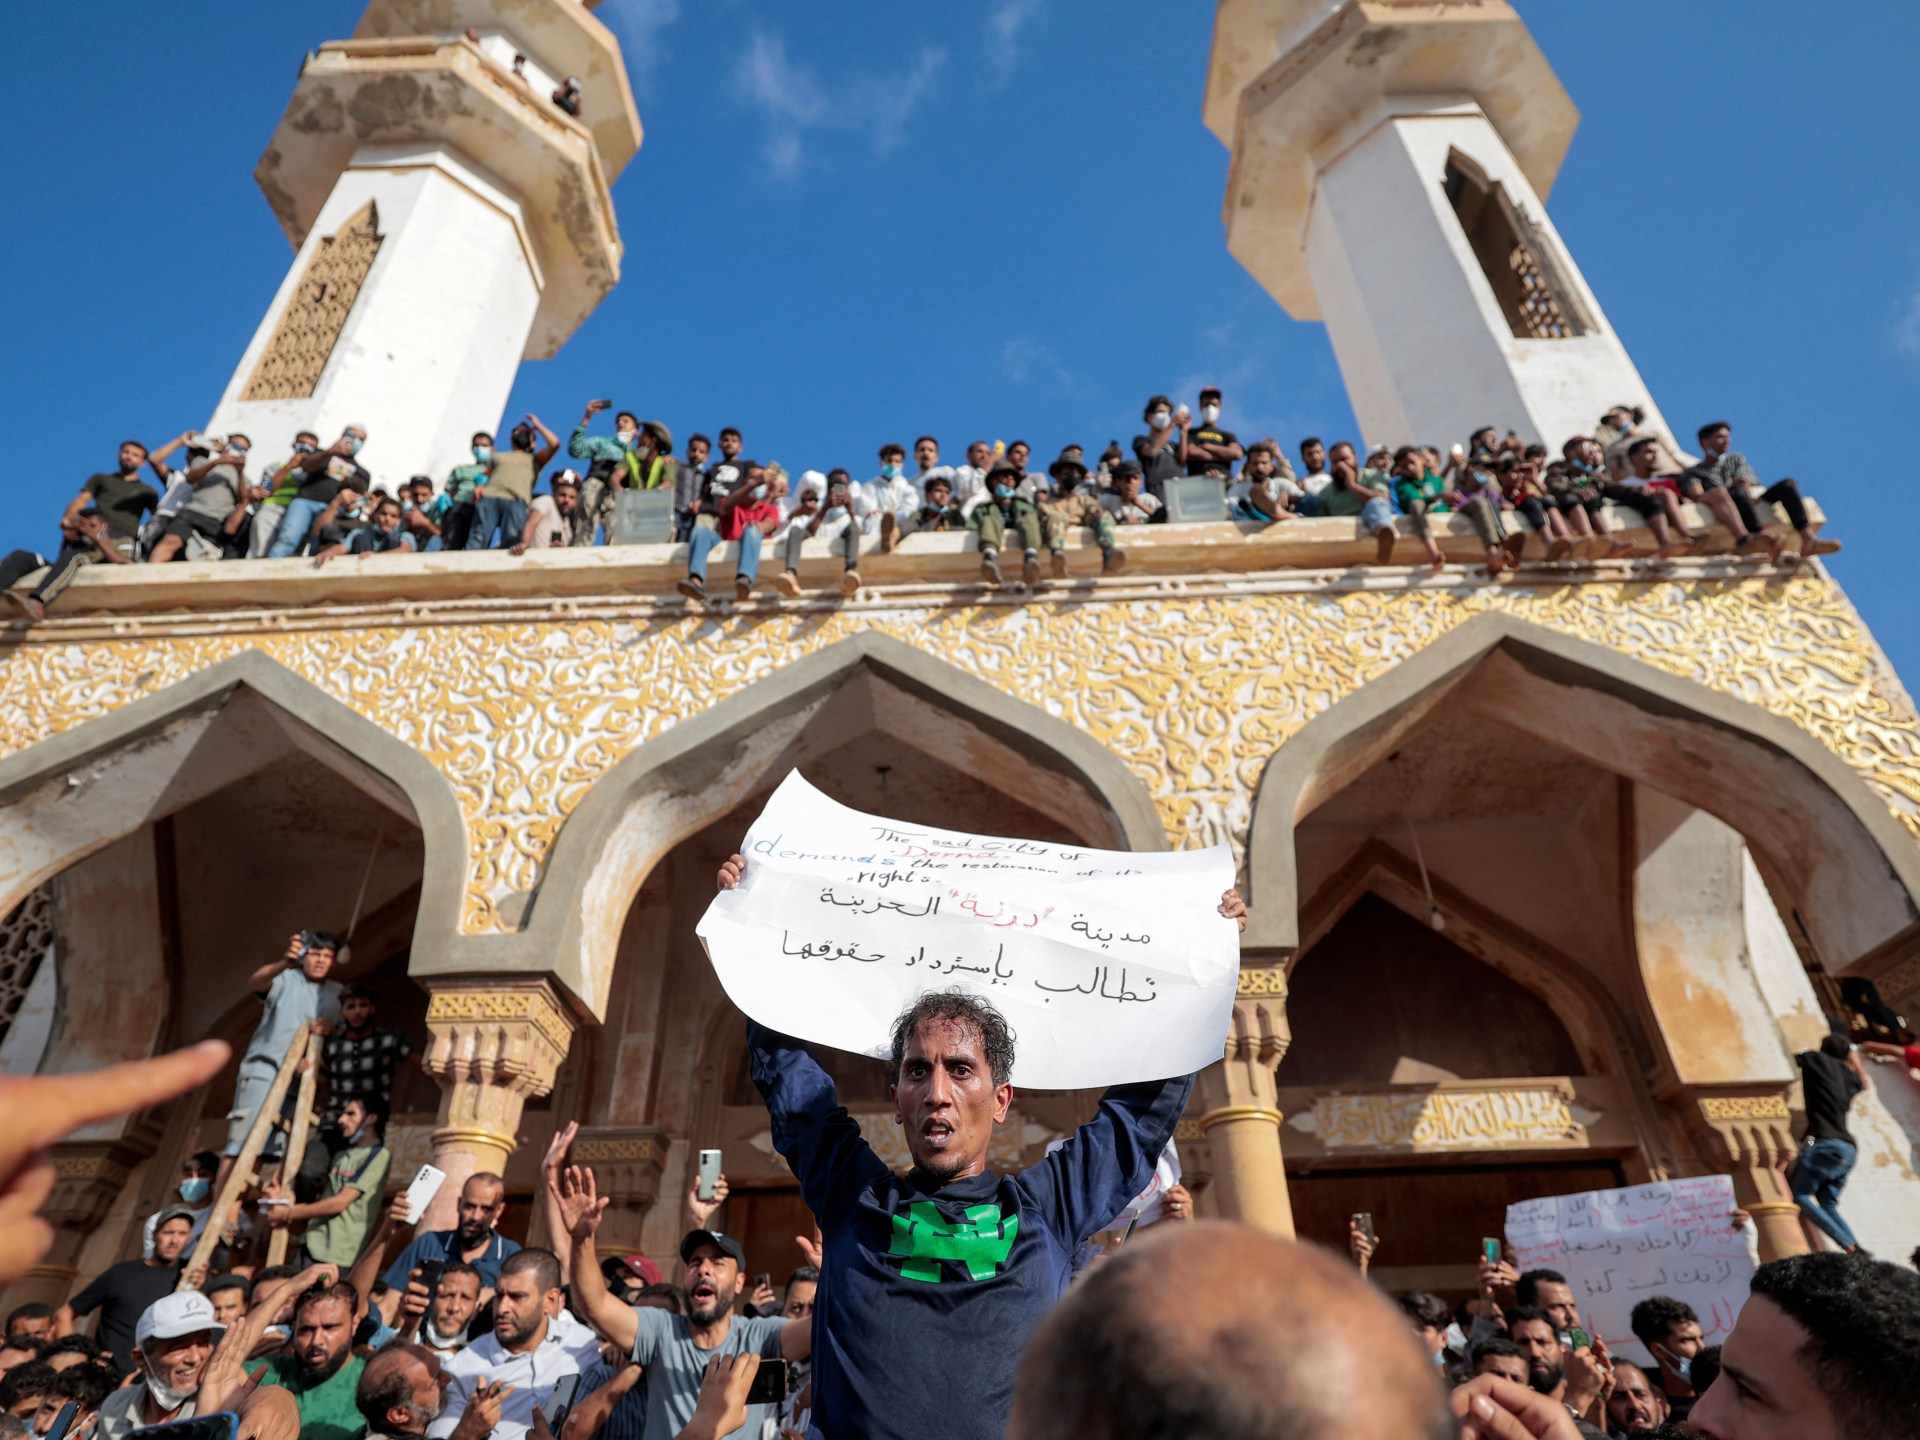 الناجون الليبيون يحتجون ضد السلطات بعد كارثة الفيضانات في درنة |  رسائل احتجاجية